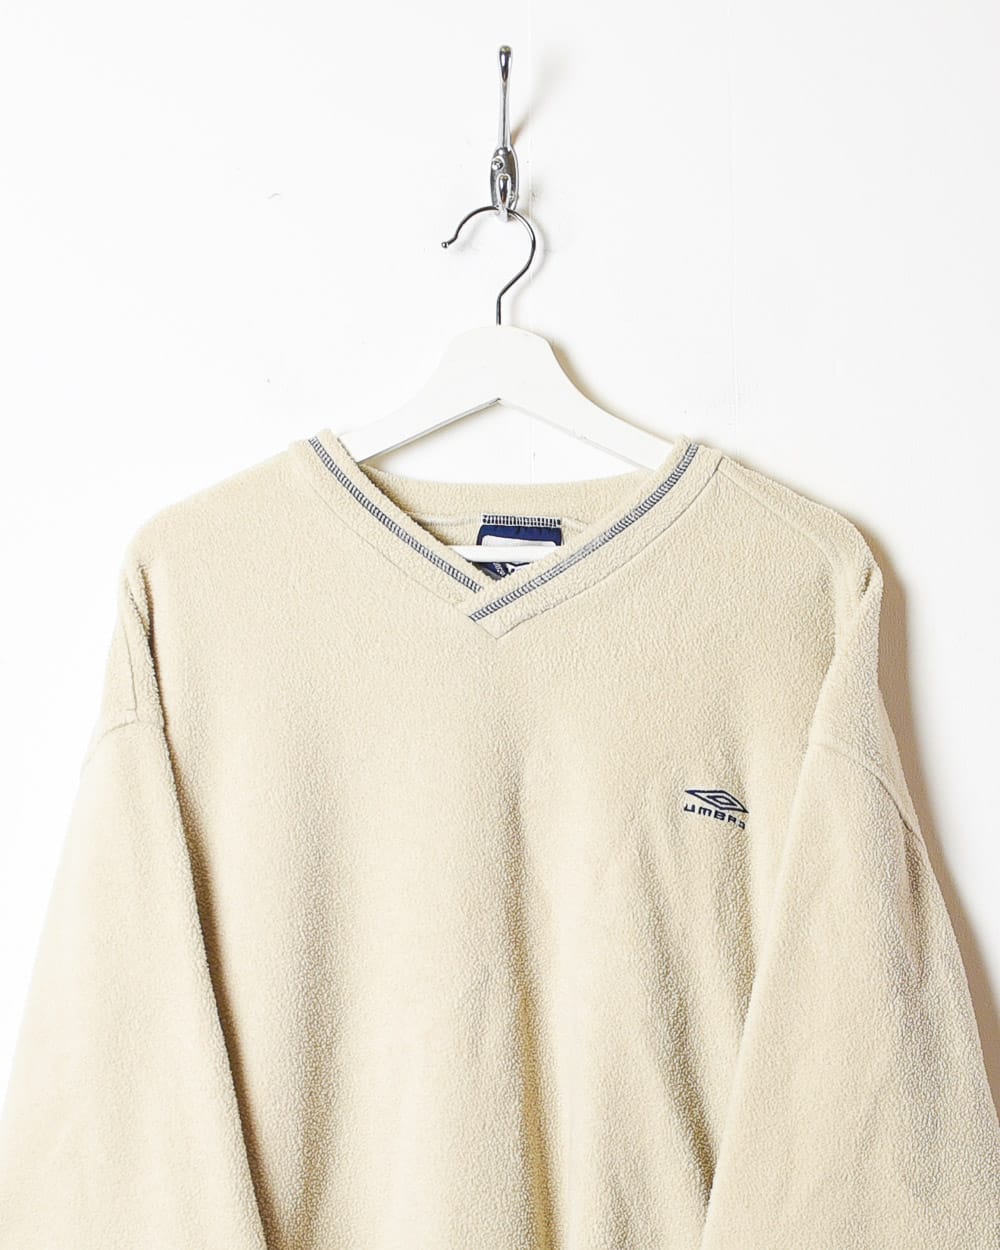 Neutral Umbro Fleece Sweatshirt - XX-Large